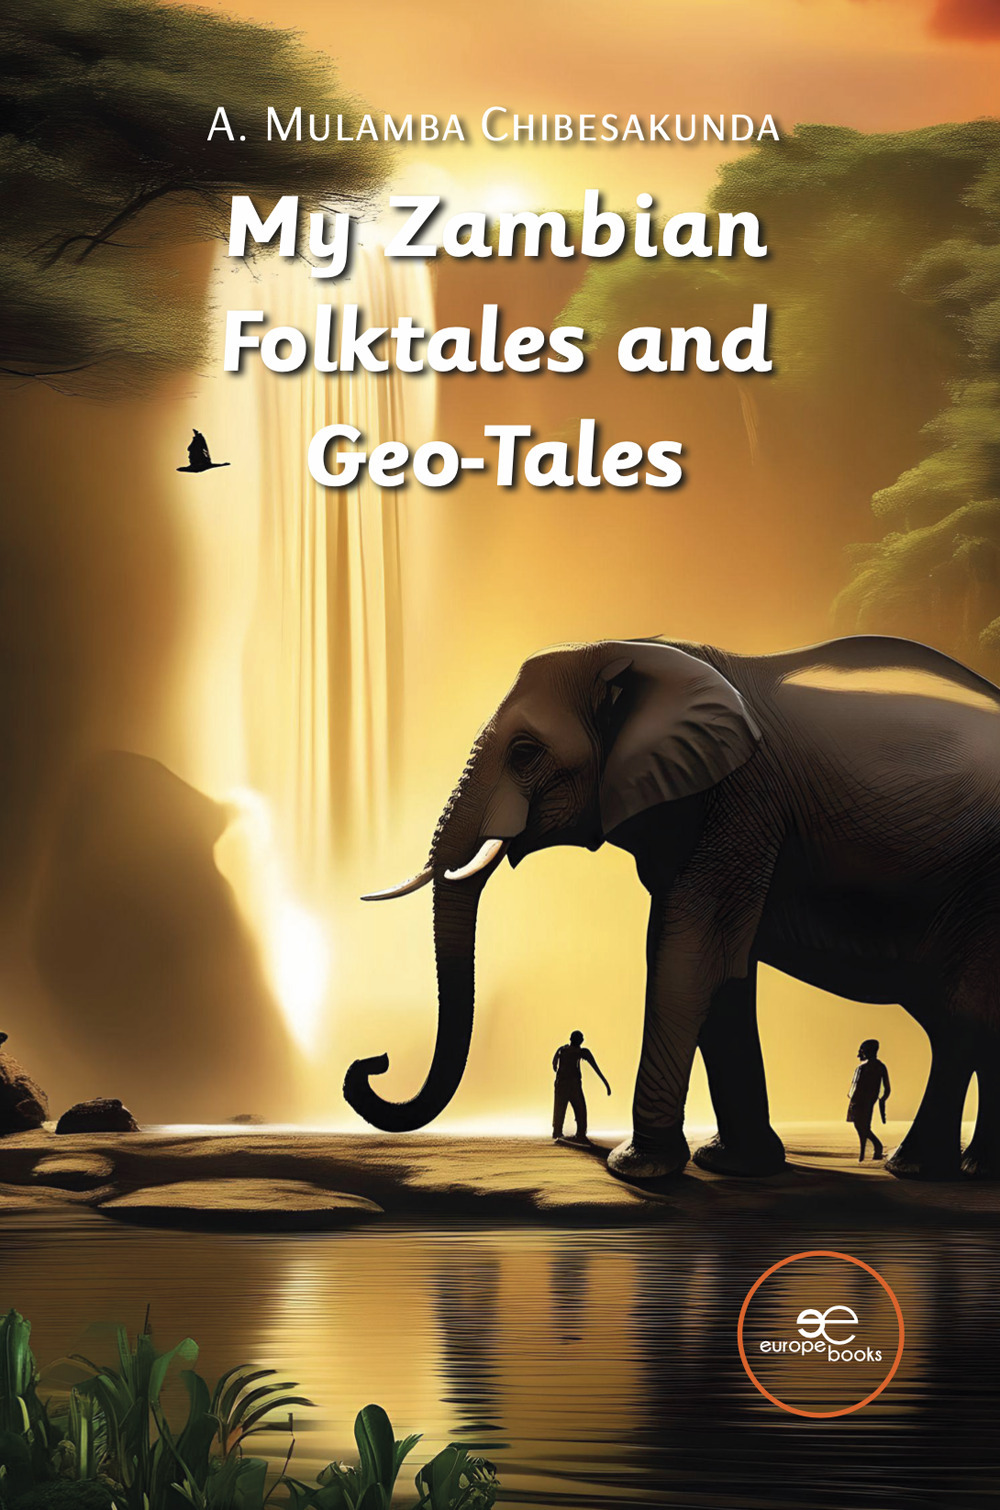 My Zambian folktales and geo-tales